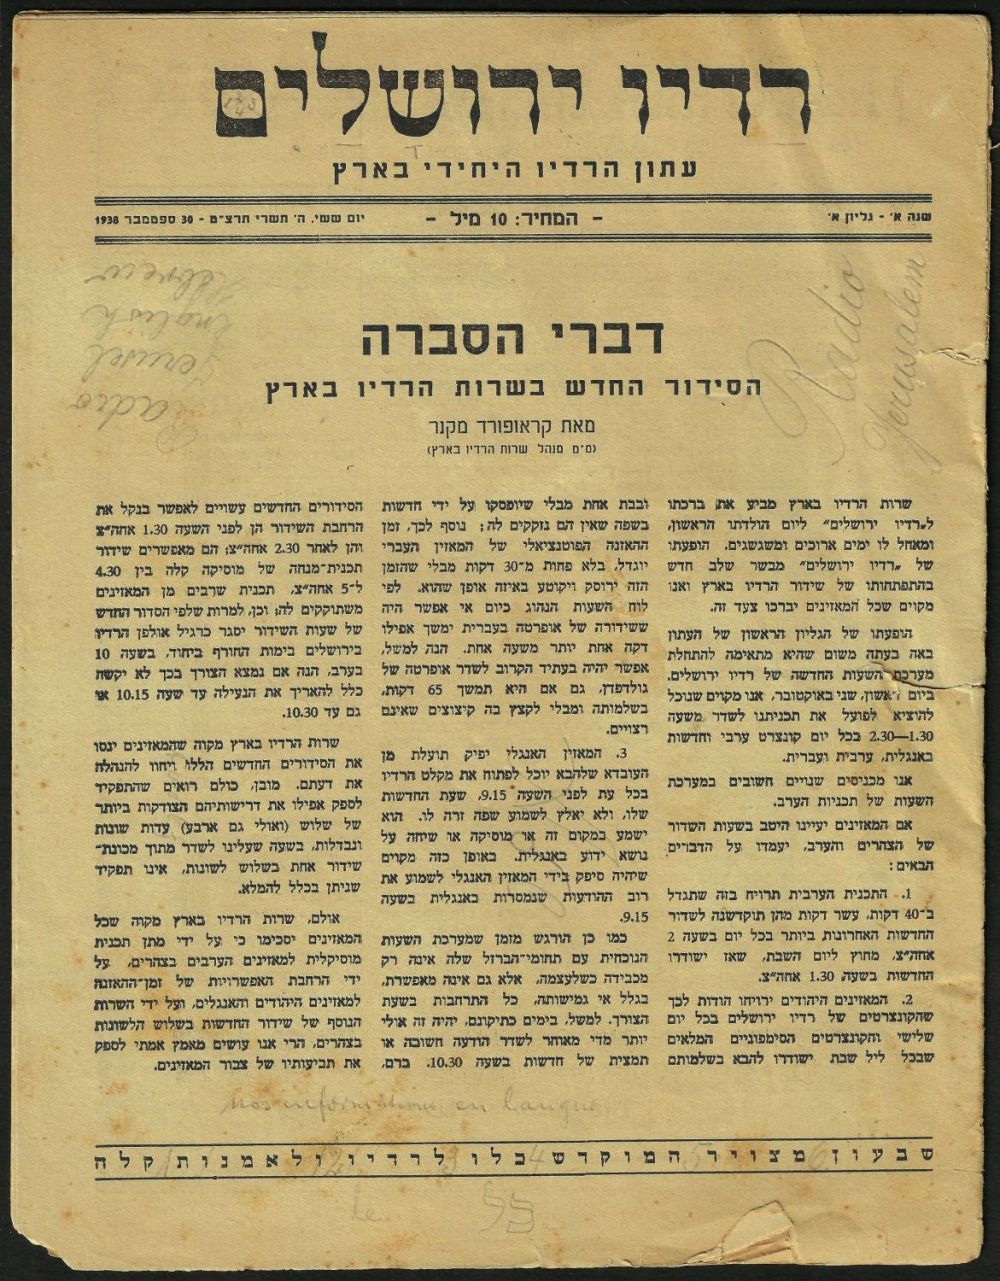 Bilingual Jerusalem Radio  vol. 1 no. 1   1938 coverpage in Hebrew